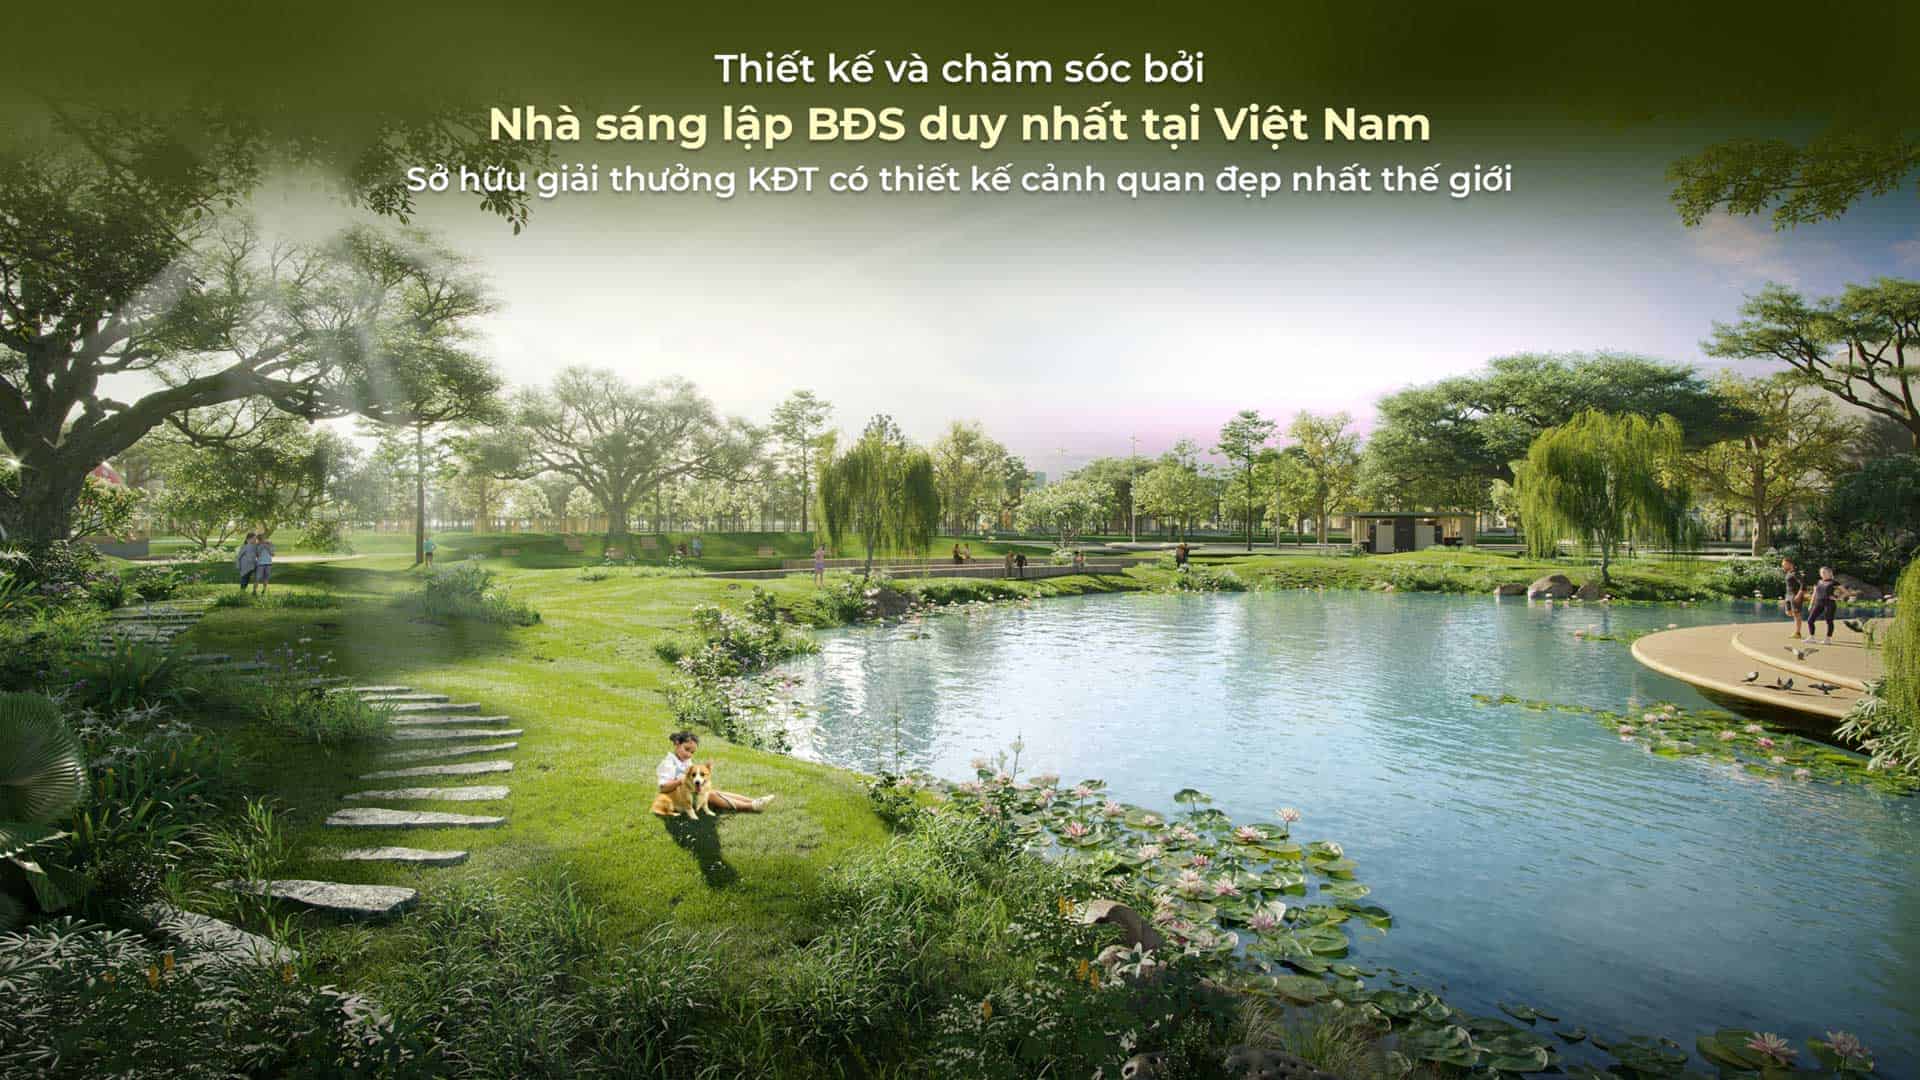 Tại sao nói dự án Ecopark Nhơn Trạch là thiên đường nghỉ dưỡng giữa sông nước hữu tình?